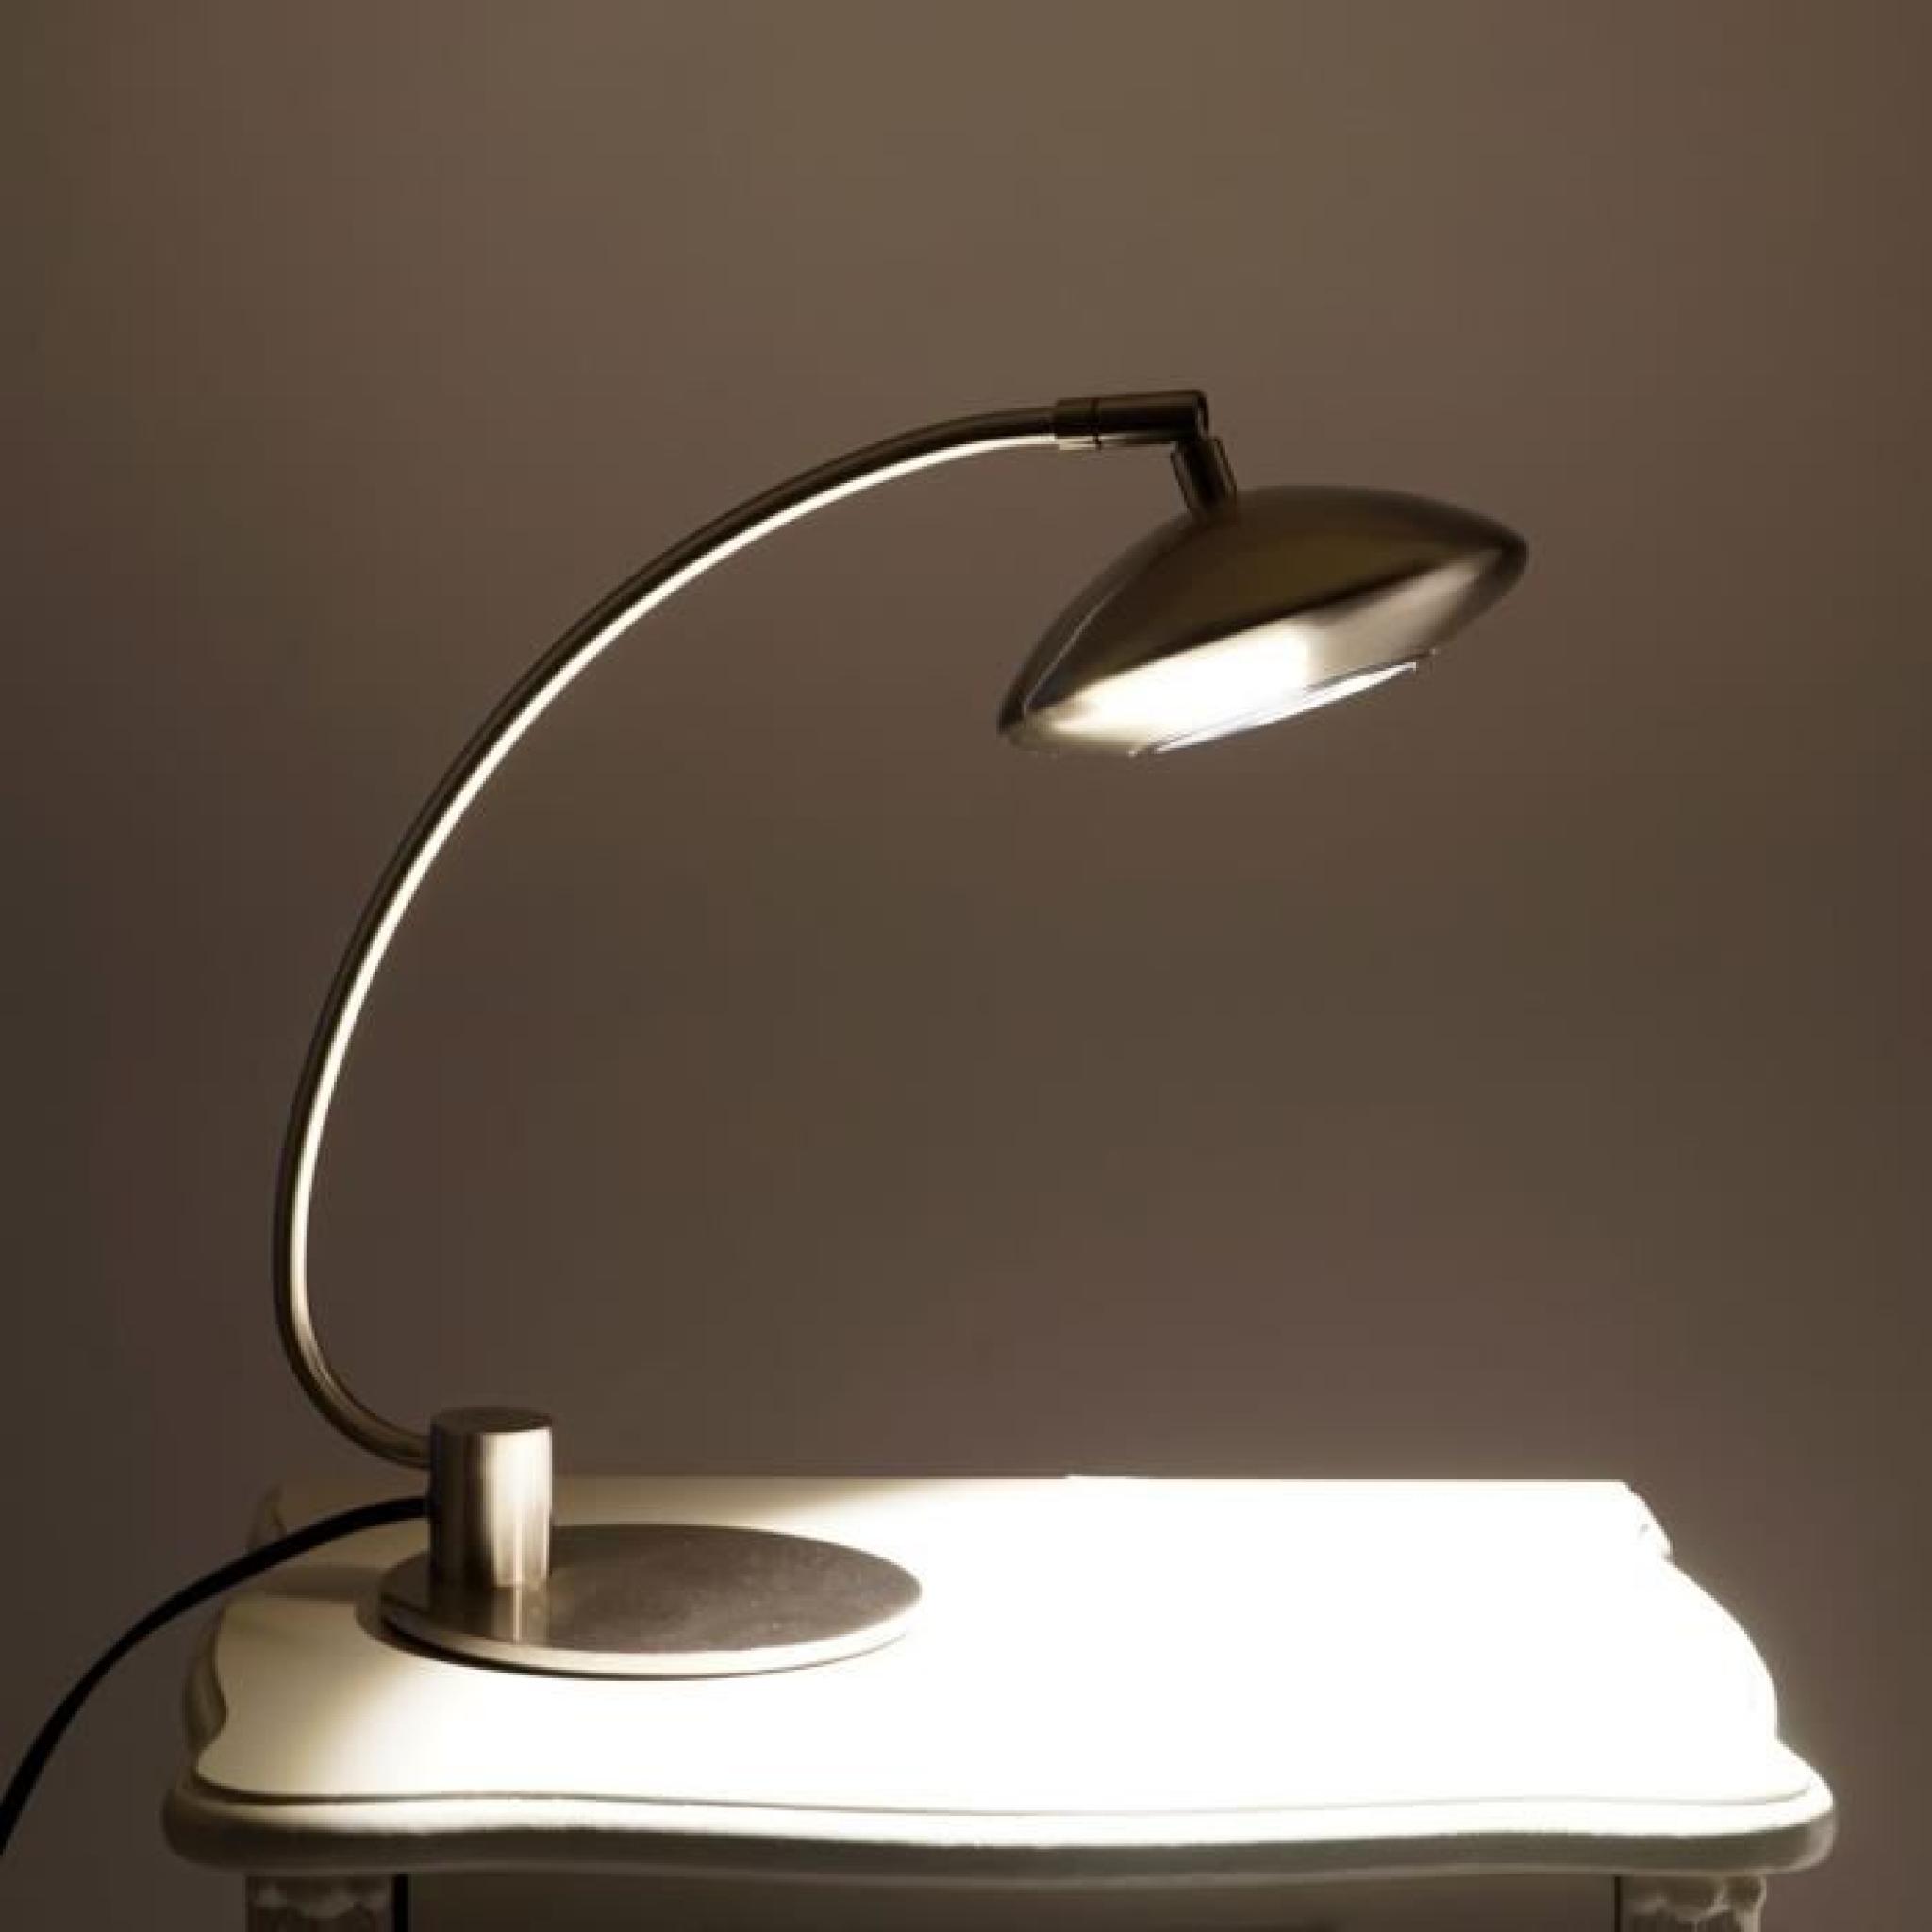 Lampe LED de bureau HW123 luminaire sur table,1x5W, économique. pas cher